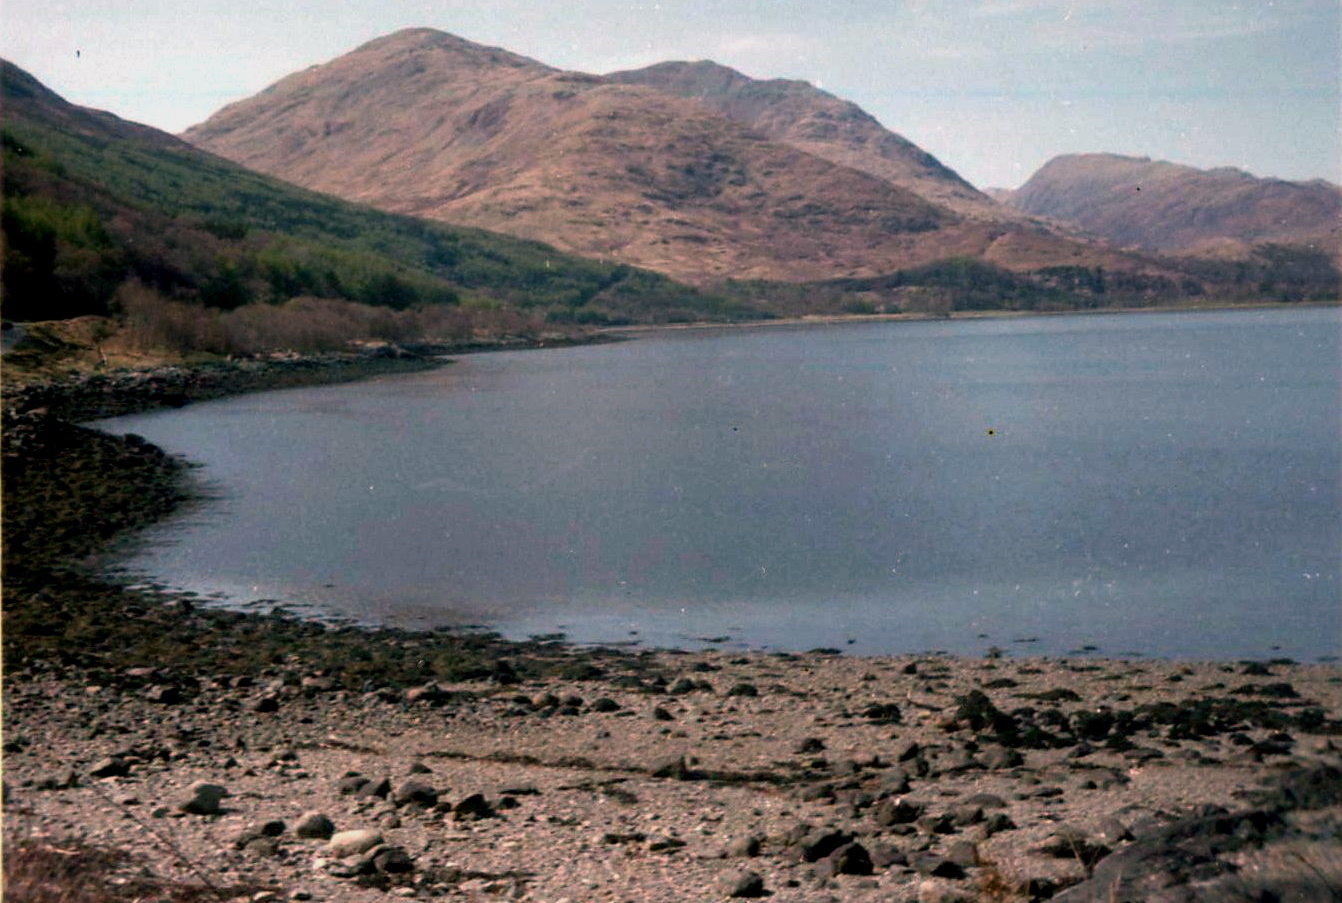 Beinn Sgulaird from Loch Creran